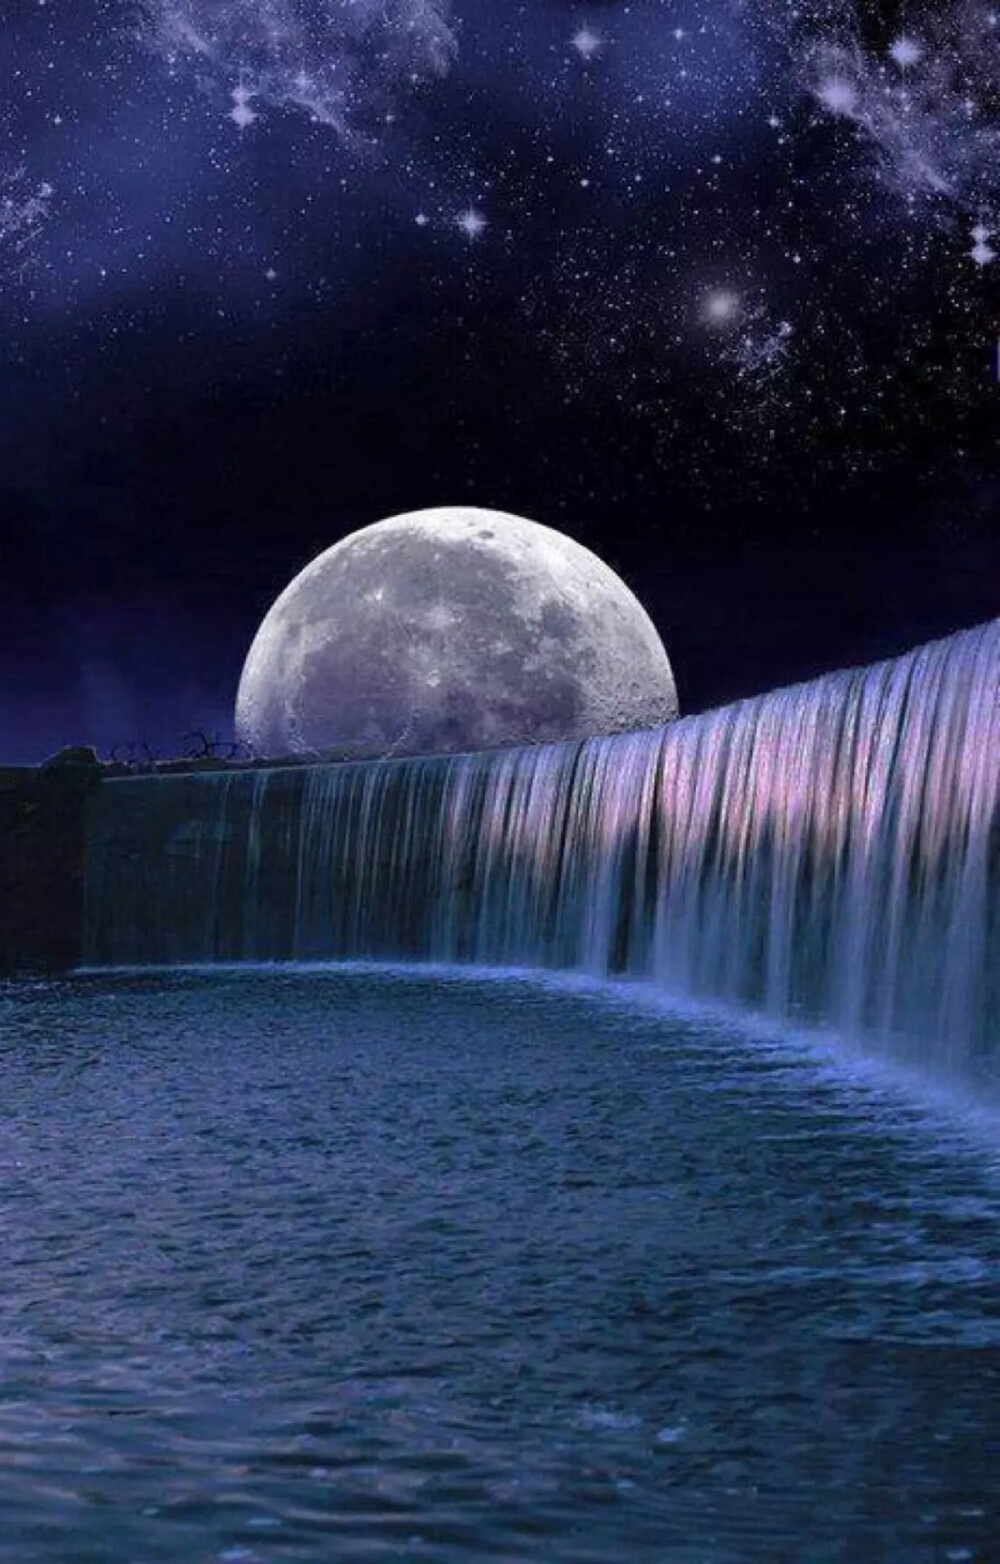 唯美星空夜景夜空明月月光自然风景iphone手机壁纸唯美壁纸锁屏